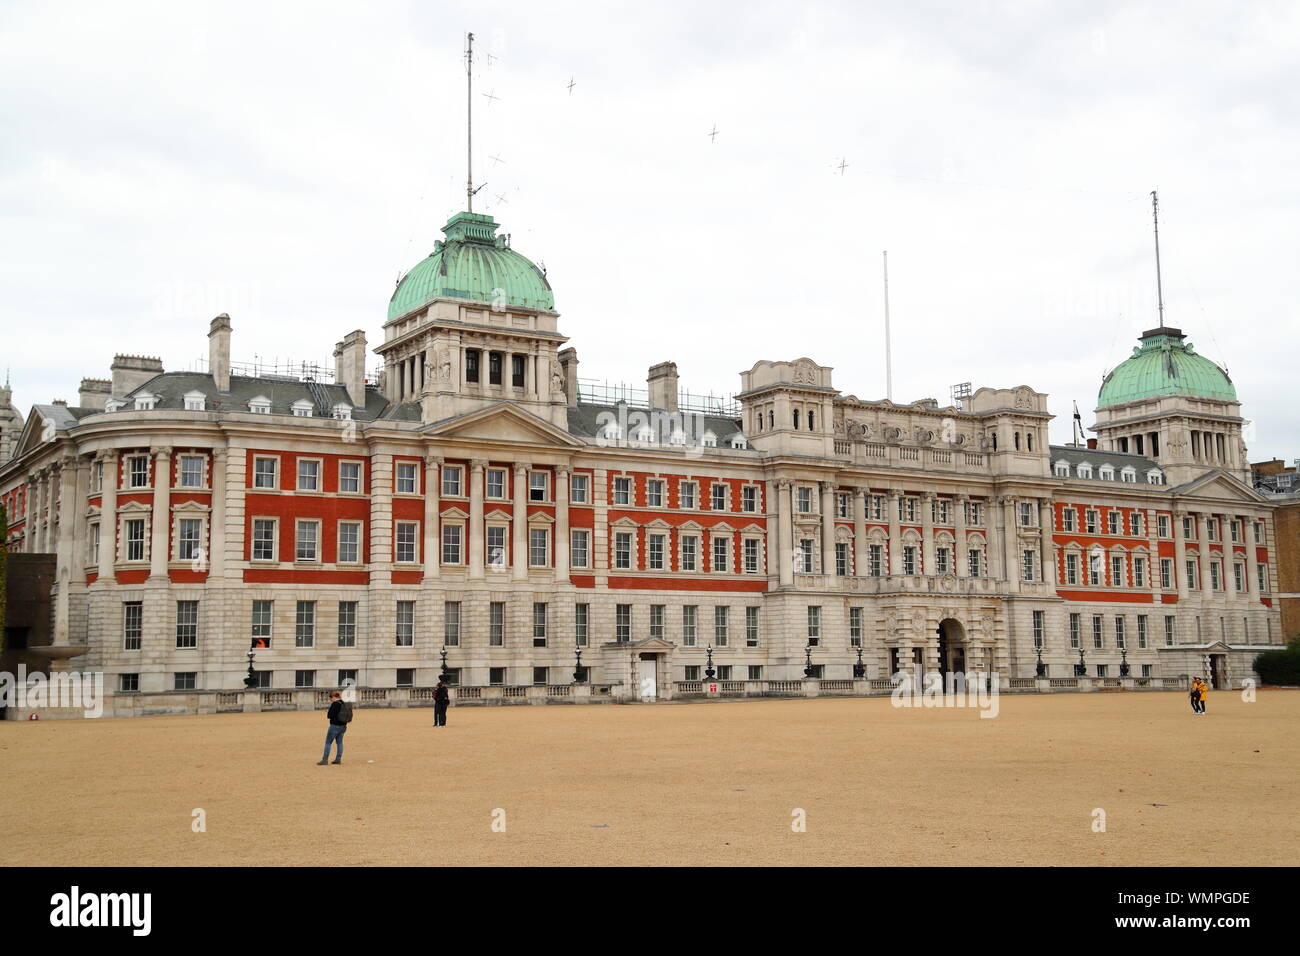 Ancien bâtiment de l'Amirauté, Horse Guards Parade, London, UK Banque D'Images